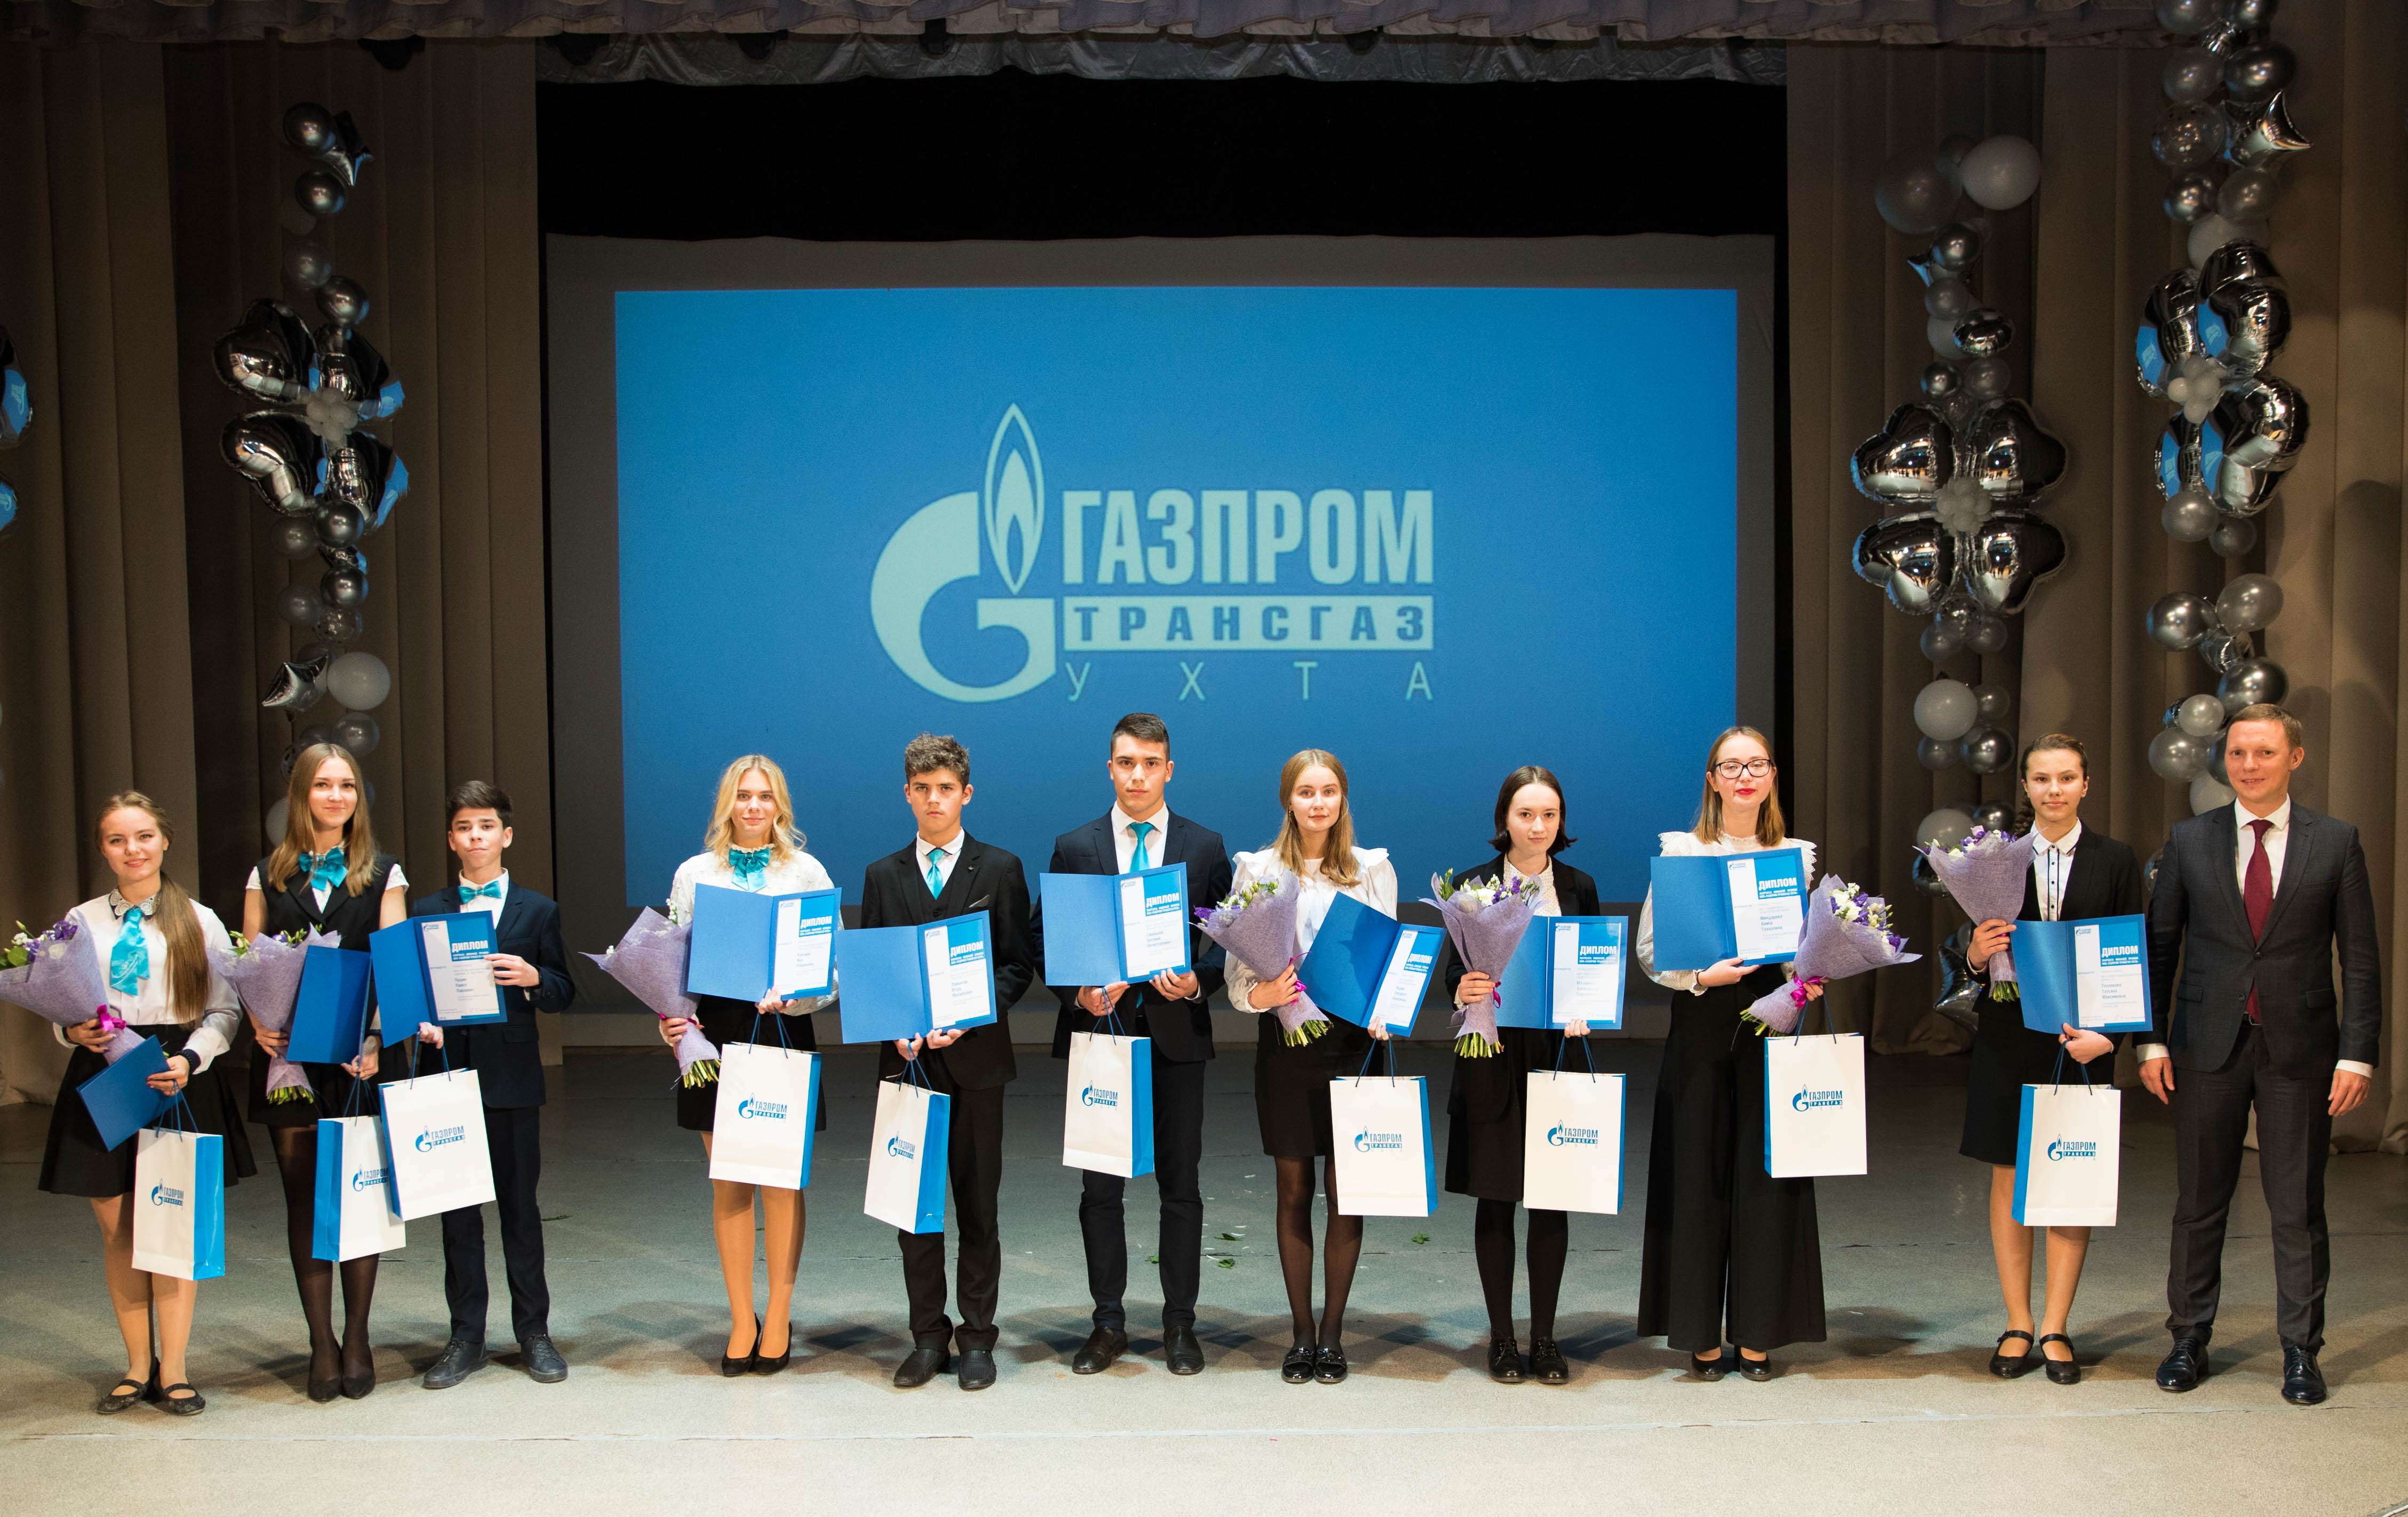 Ukhta pupils receive prizes from Gazprom Transgaz Ukhta